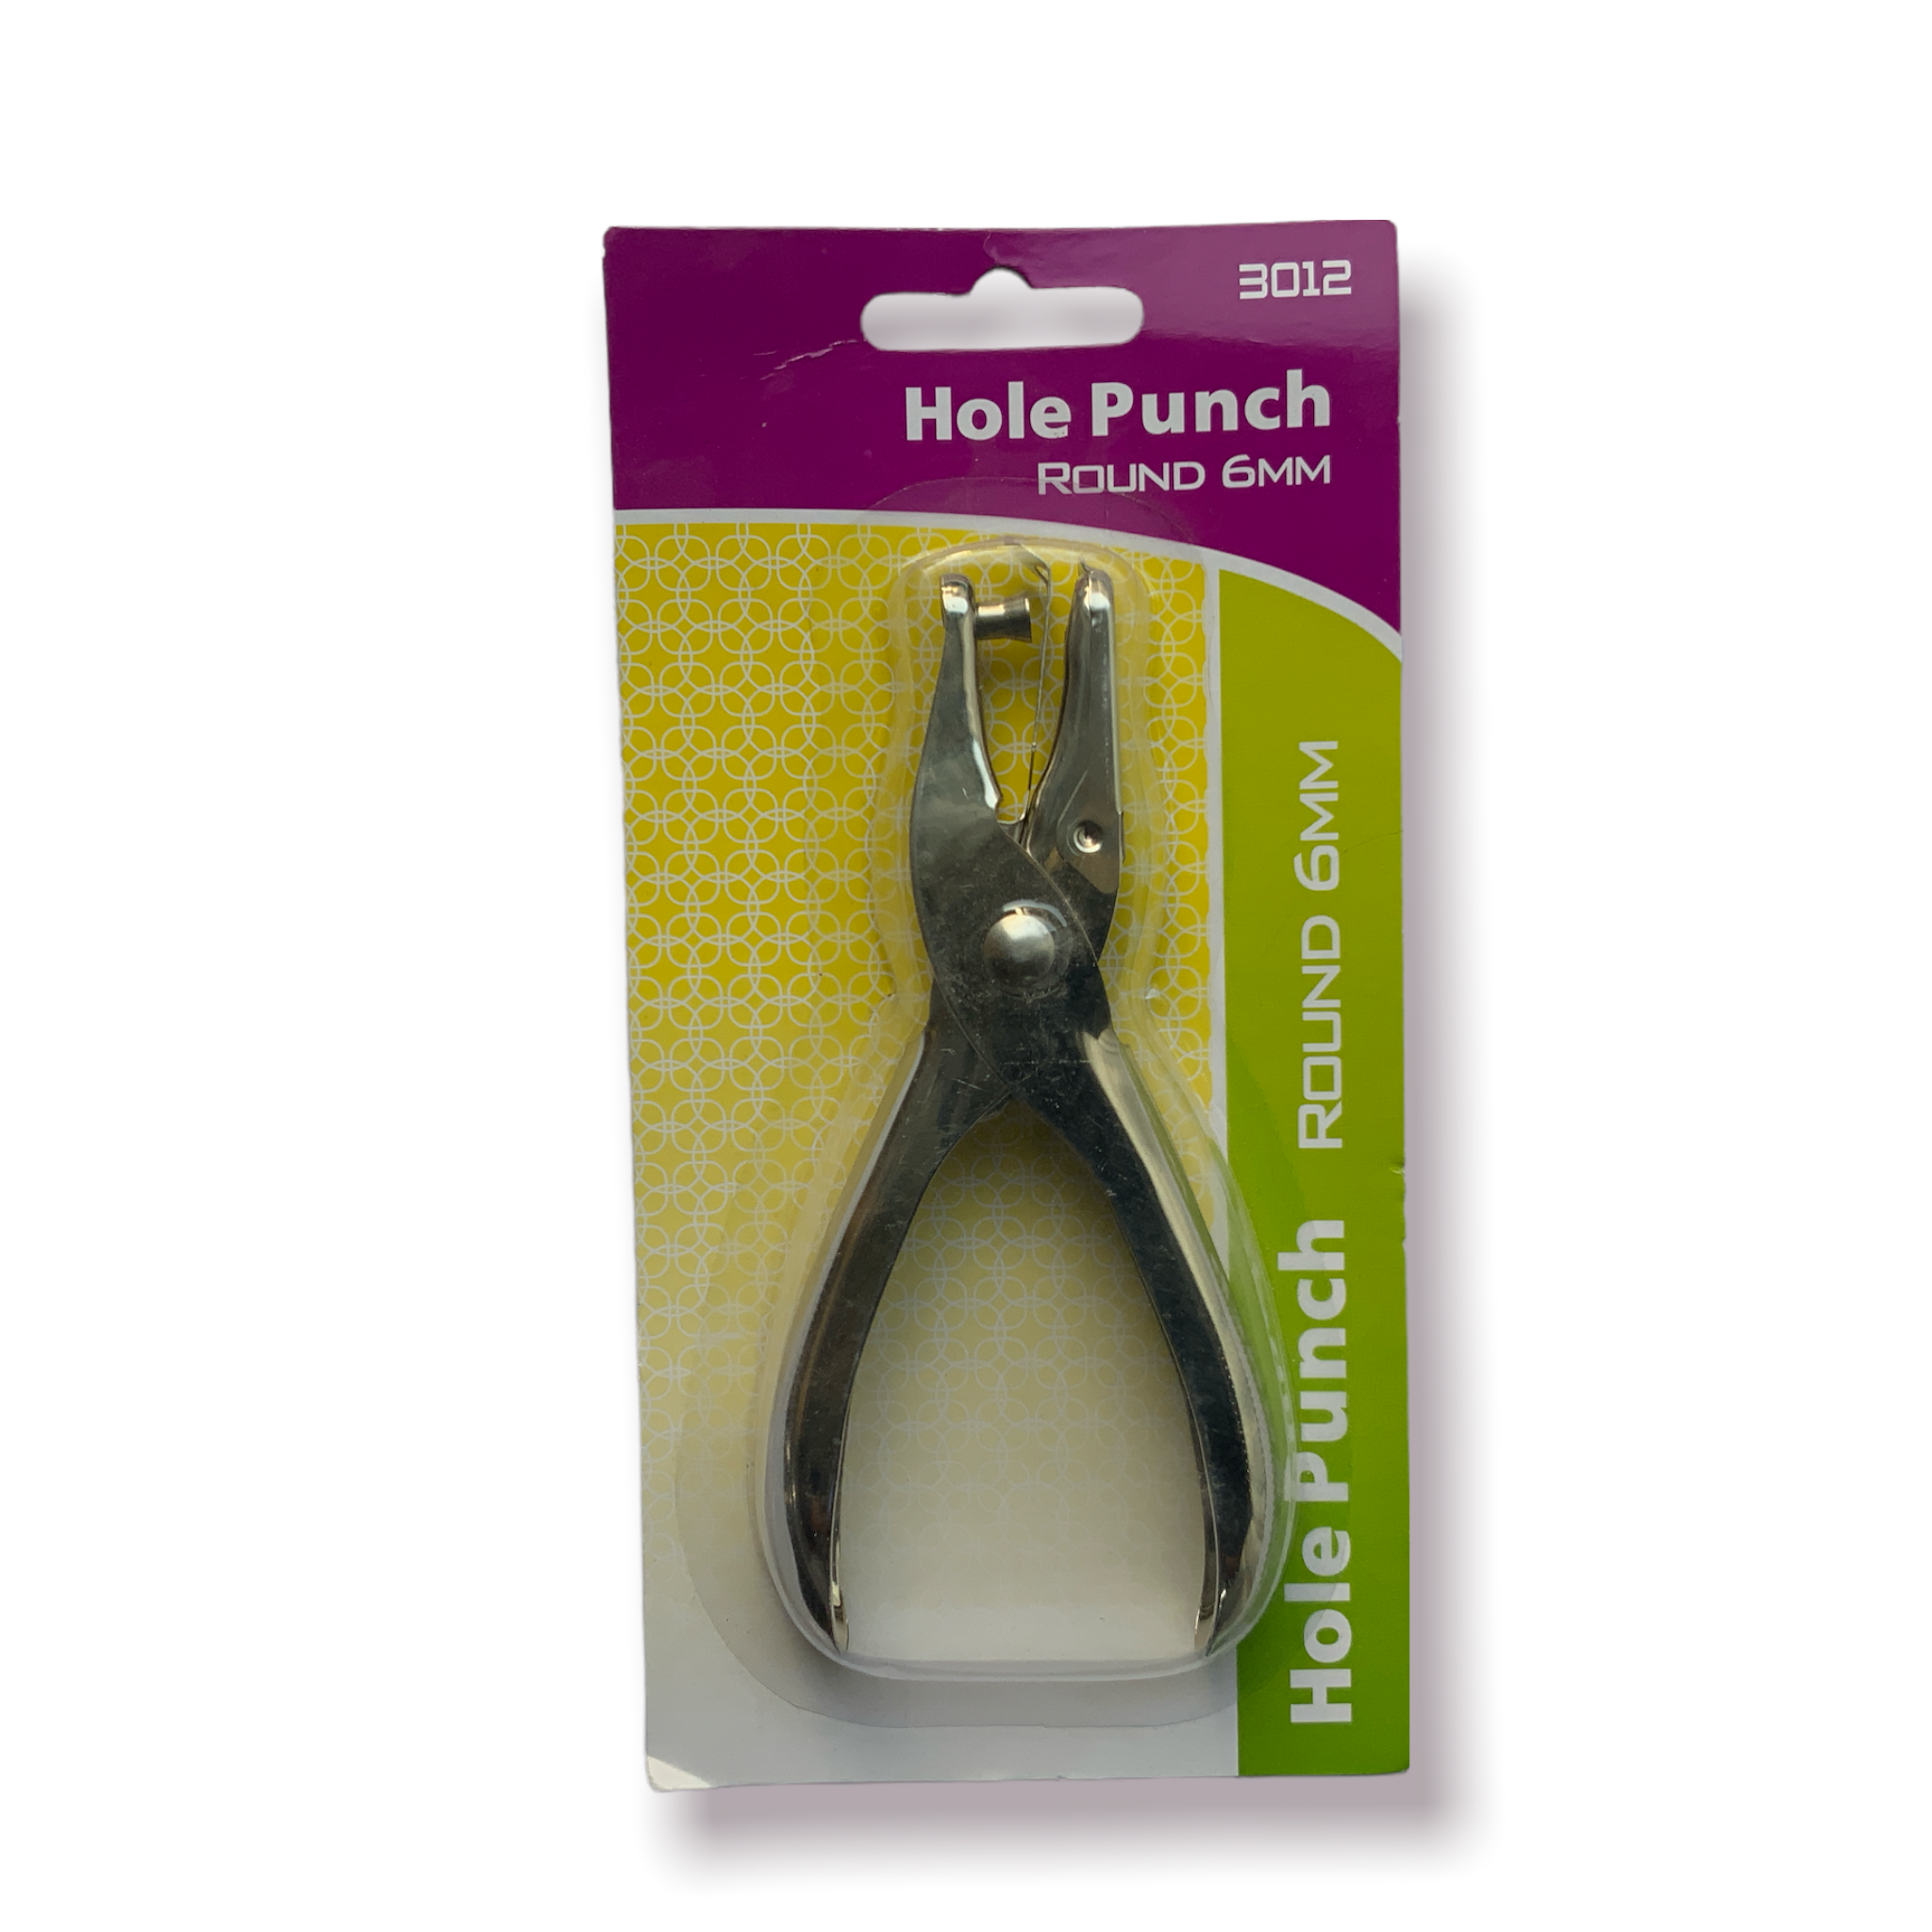 Habre huecos de papel (hole punch)